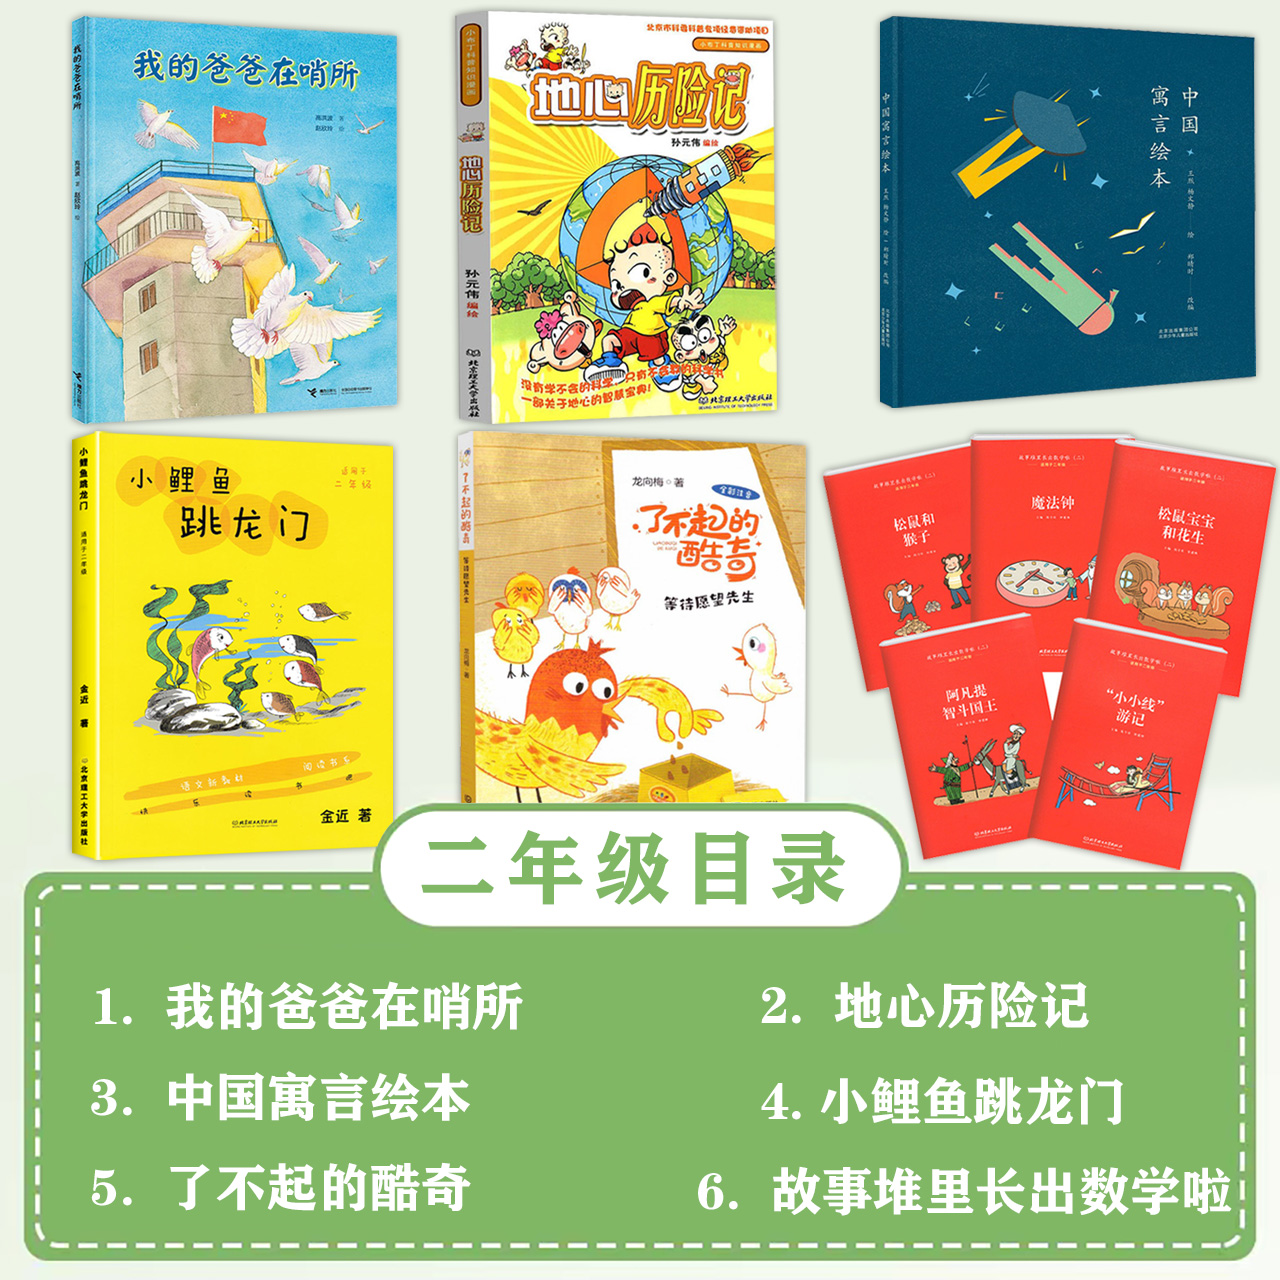 百师阅读 暑期书单小学二年级书香一夏阅读中国寓言了不起的酷